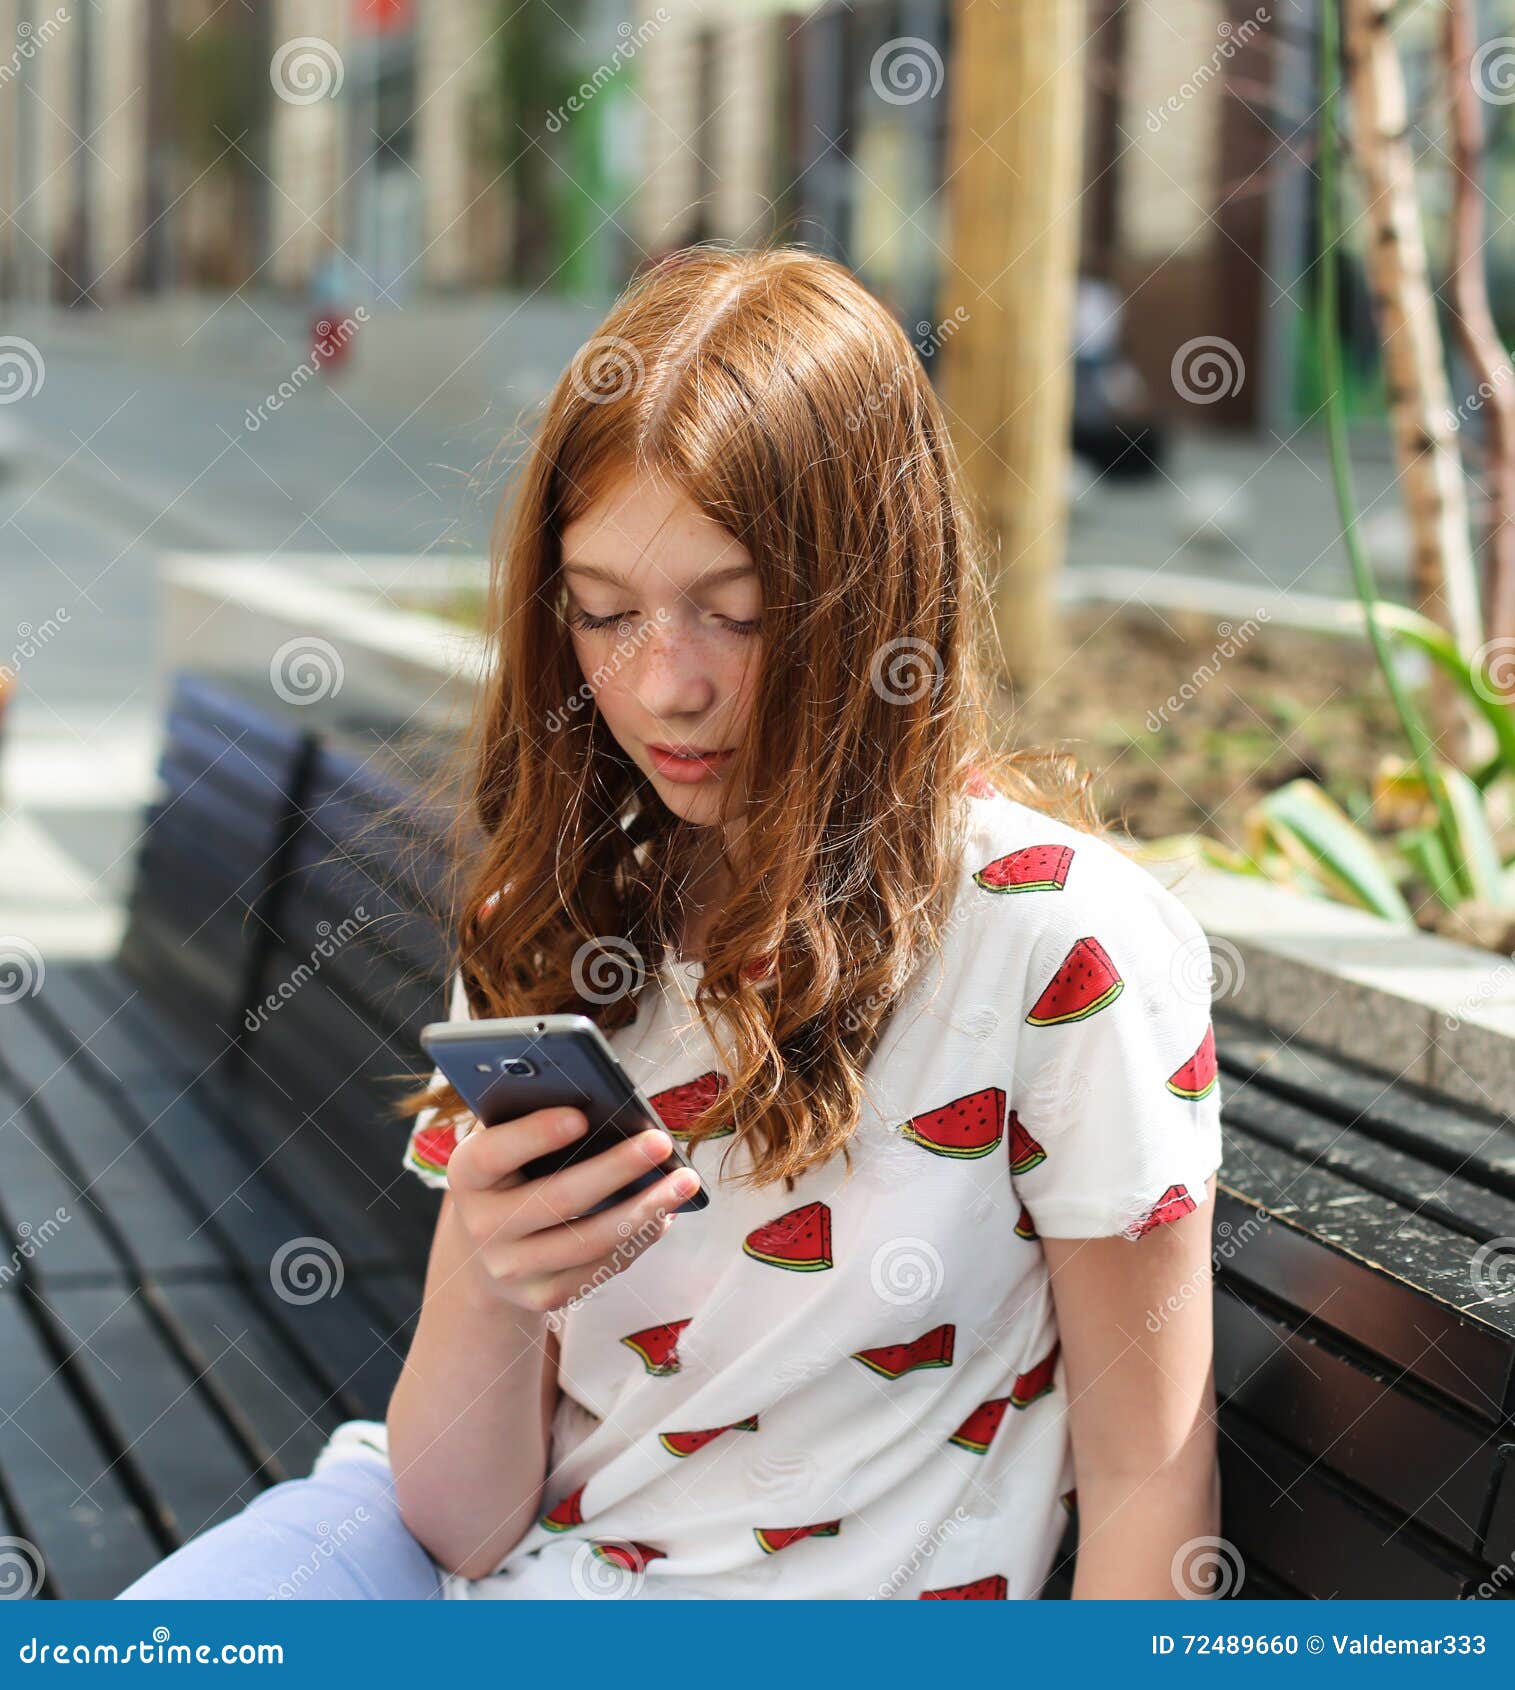 Подруга сидит в телефоне. Девушка со смартфоном. Девочка сидит в телефоне. Девушка с телефоном. Девушка сидит в телефоне.